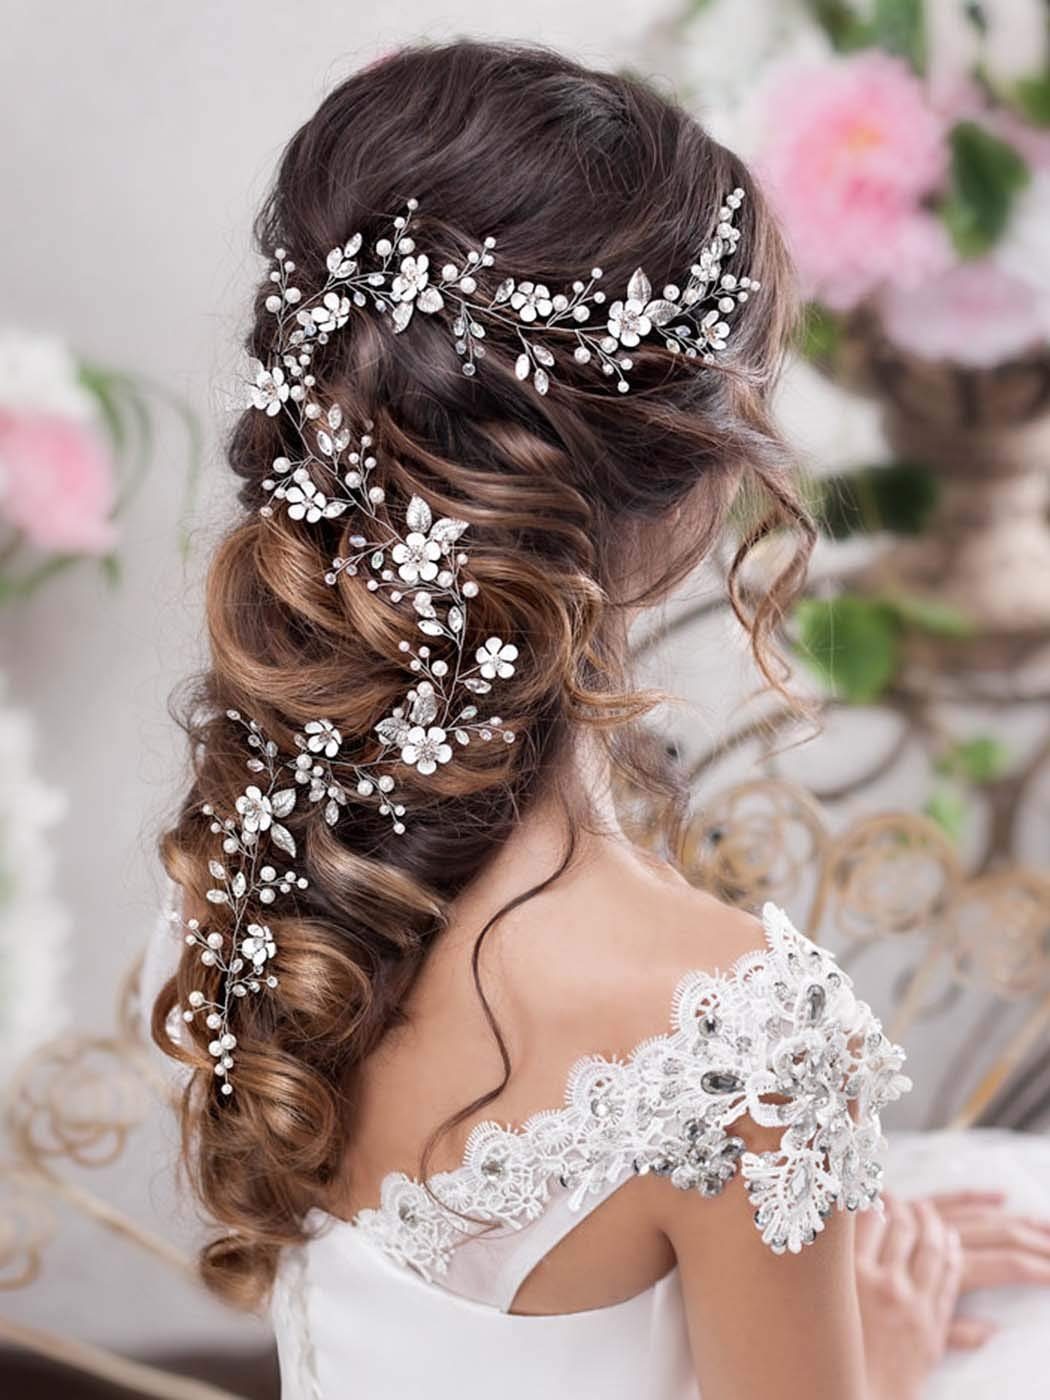 Leway Diadem »Braut Hochzeit Haar Rebe Kristall Blume Stirnband Braut Perle  Haarteil Accessoires für Frauen und Mädchen« online kaufen | OTTO